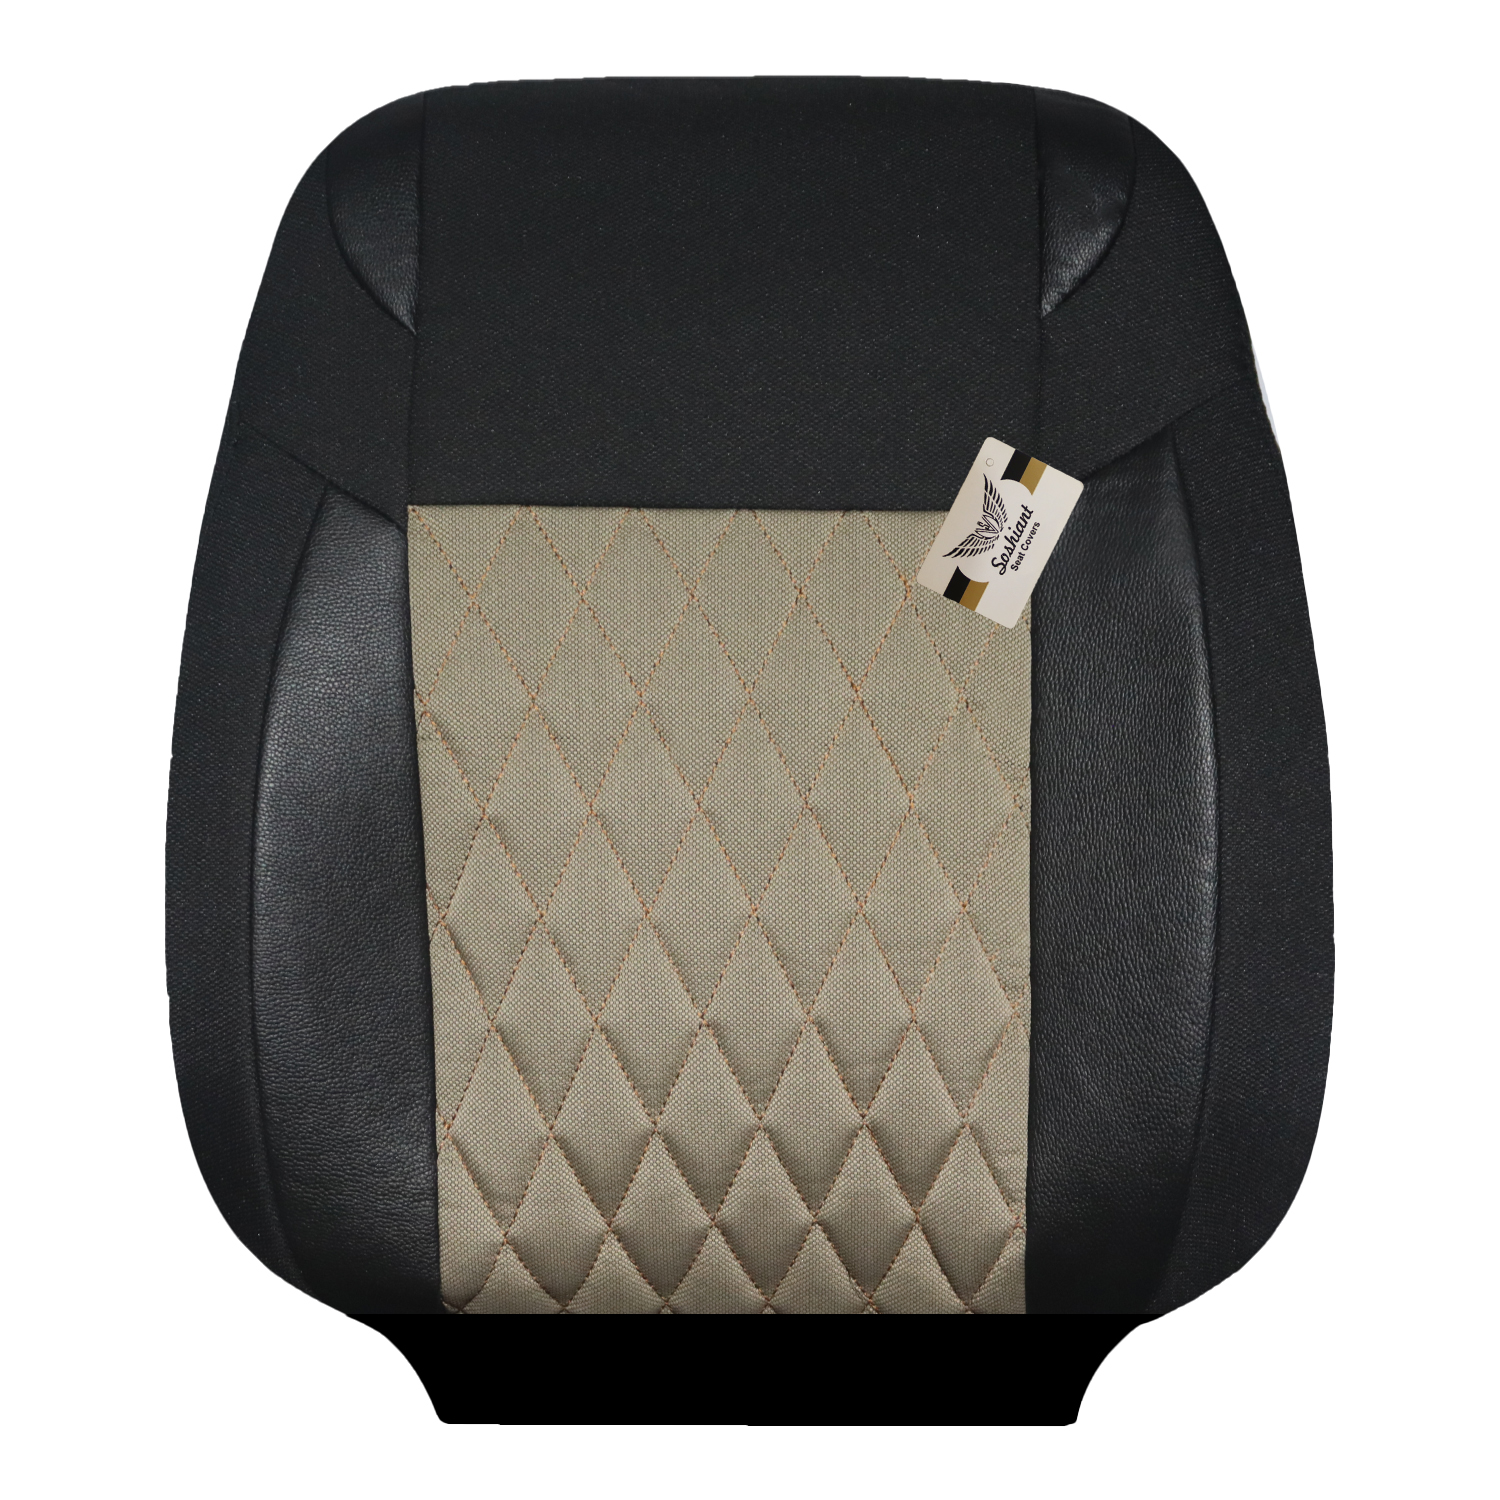 روکش صندلی خودرو سوشیانت مدل h5 مناسب برای پژو پرشیا